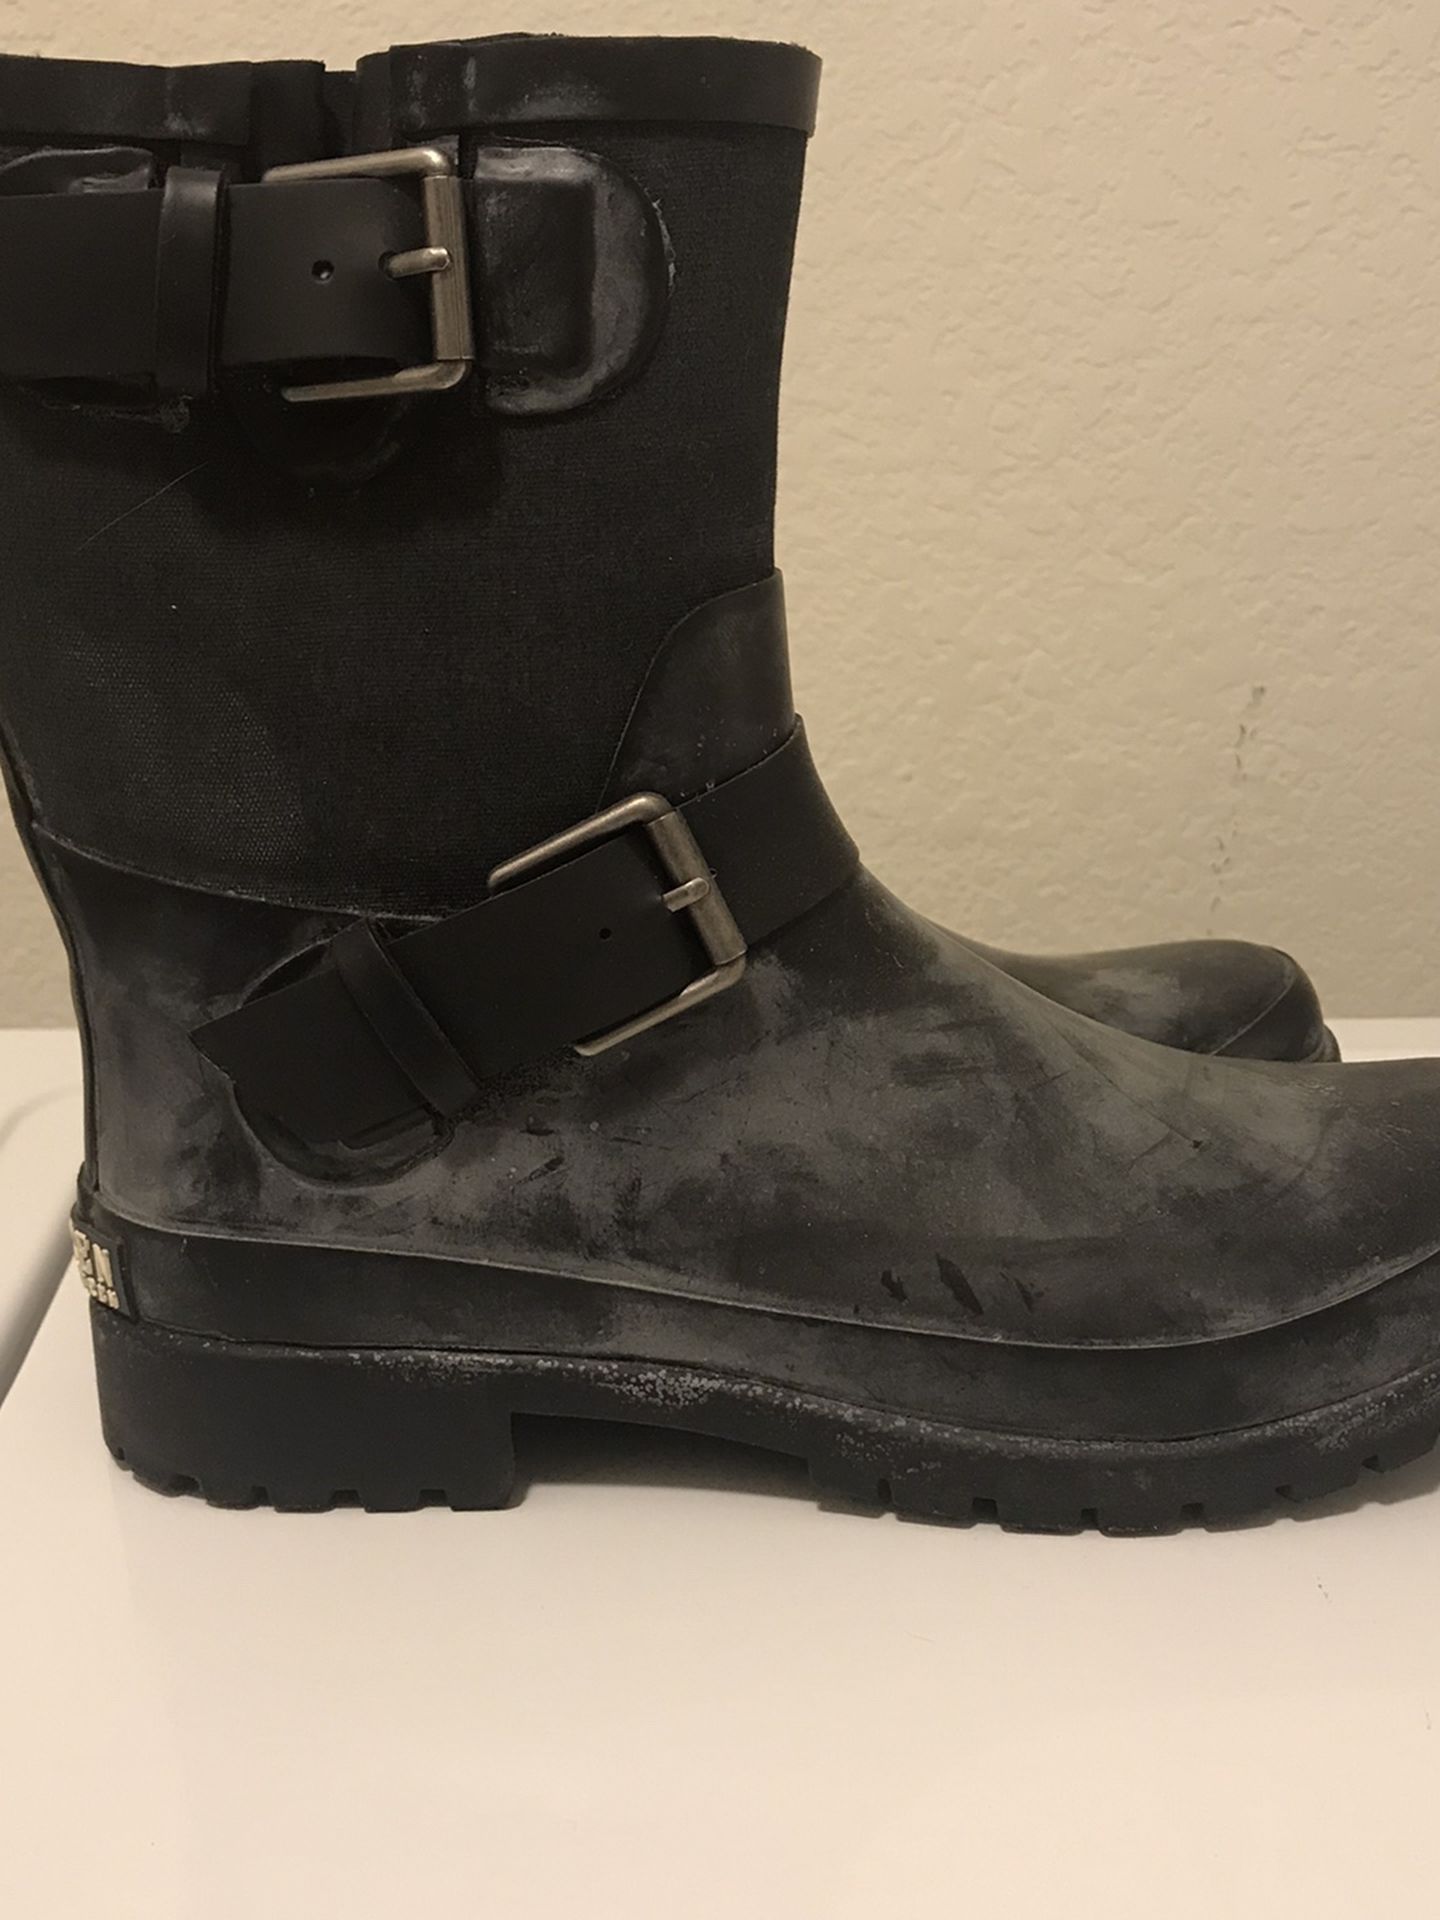 Ralph Lauren rain boots size 9 women